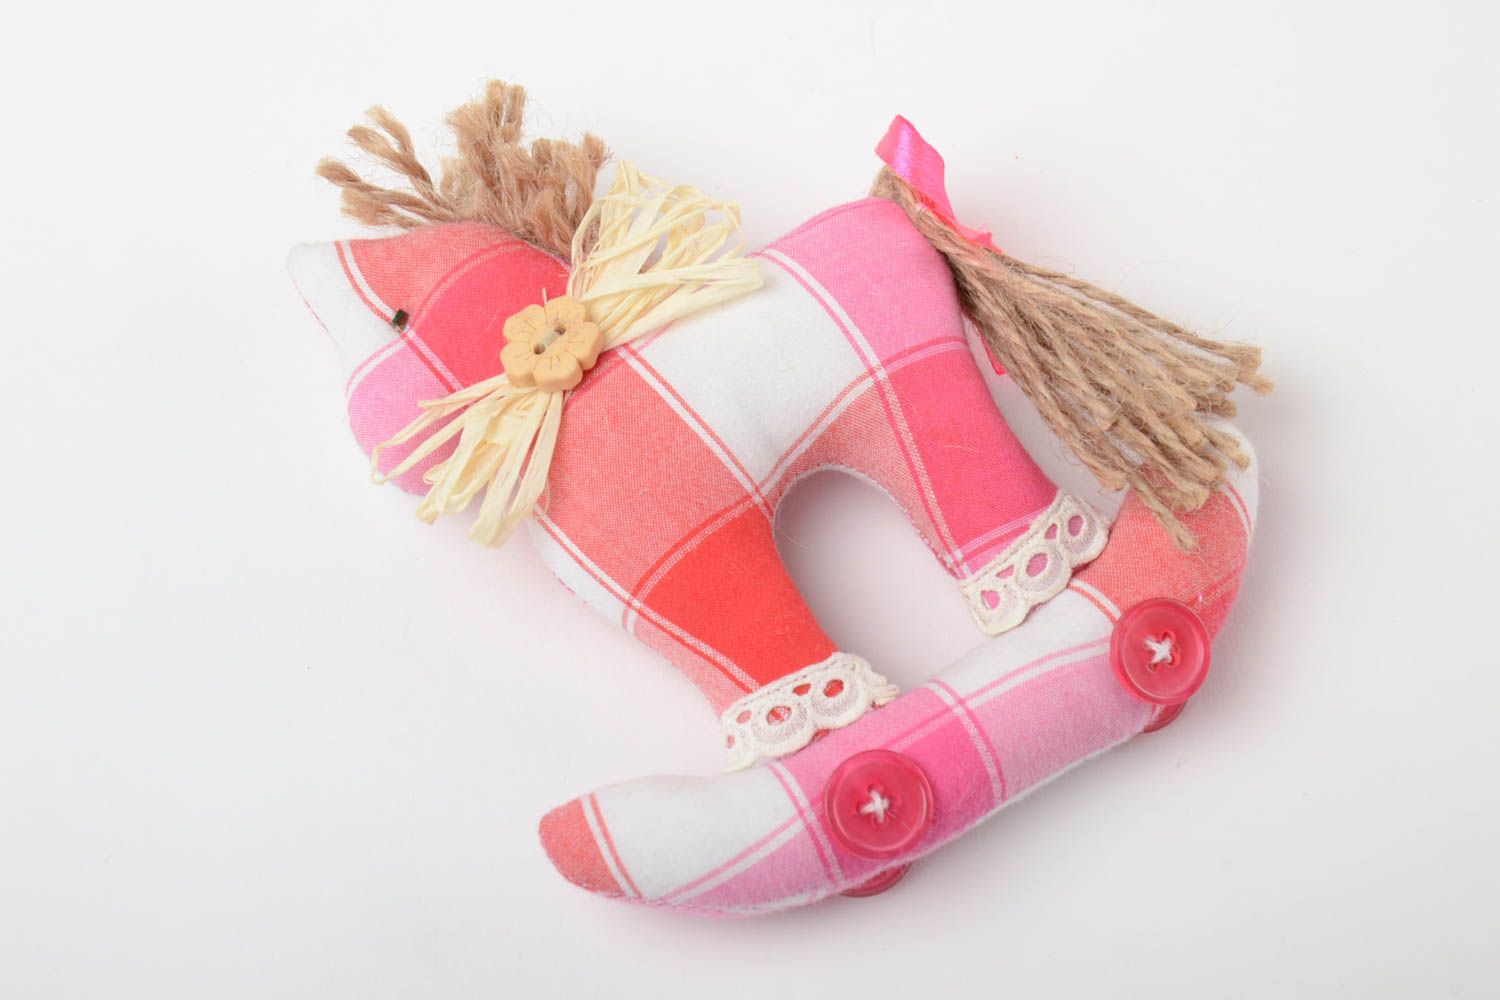 Мягкая игрушка из ткани ручной работы лошадка авторская розовая красивая фото 3